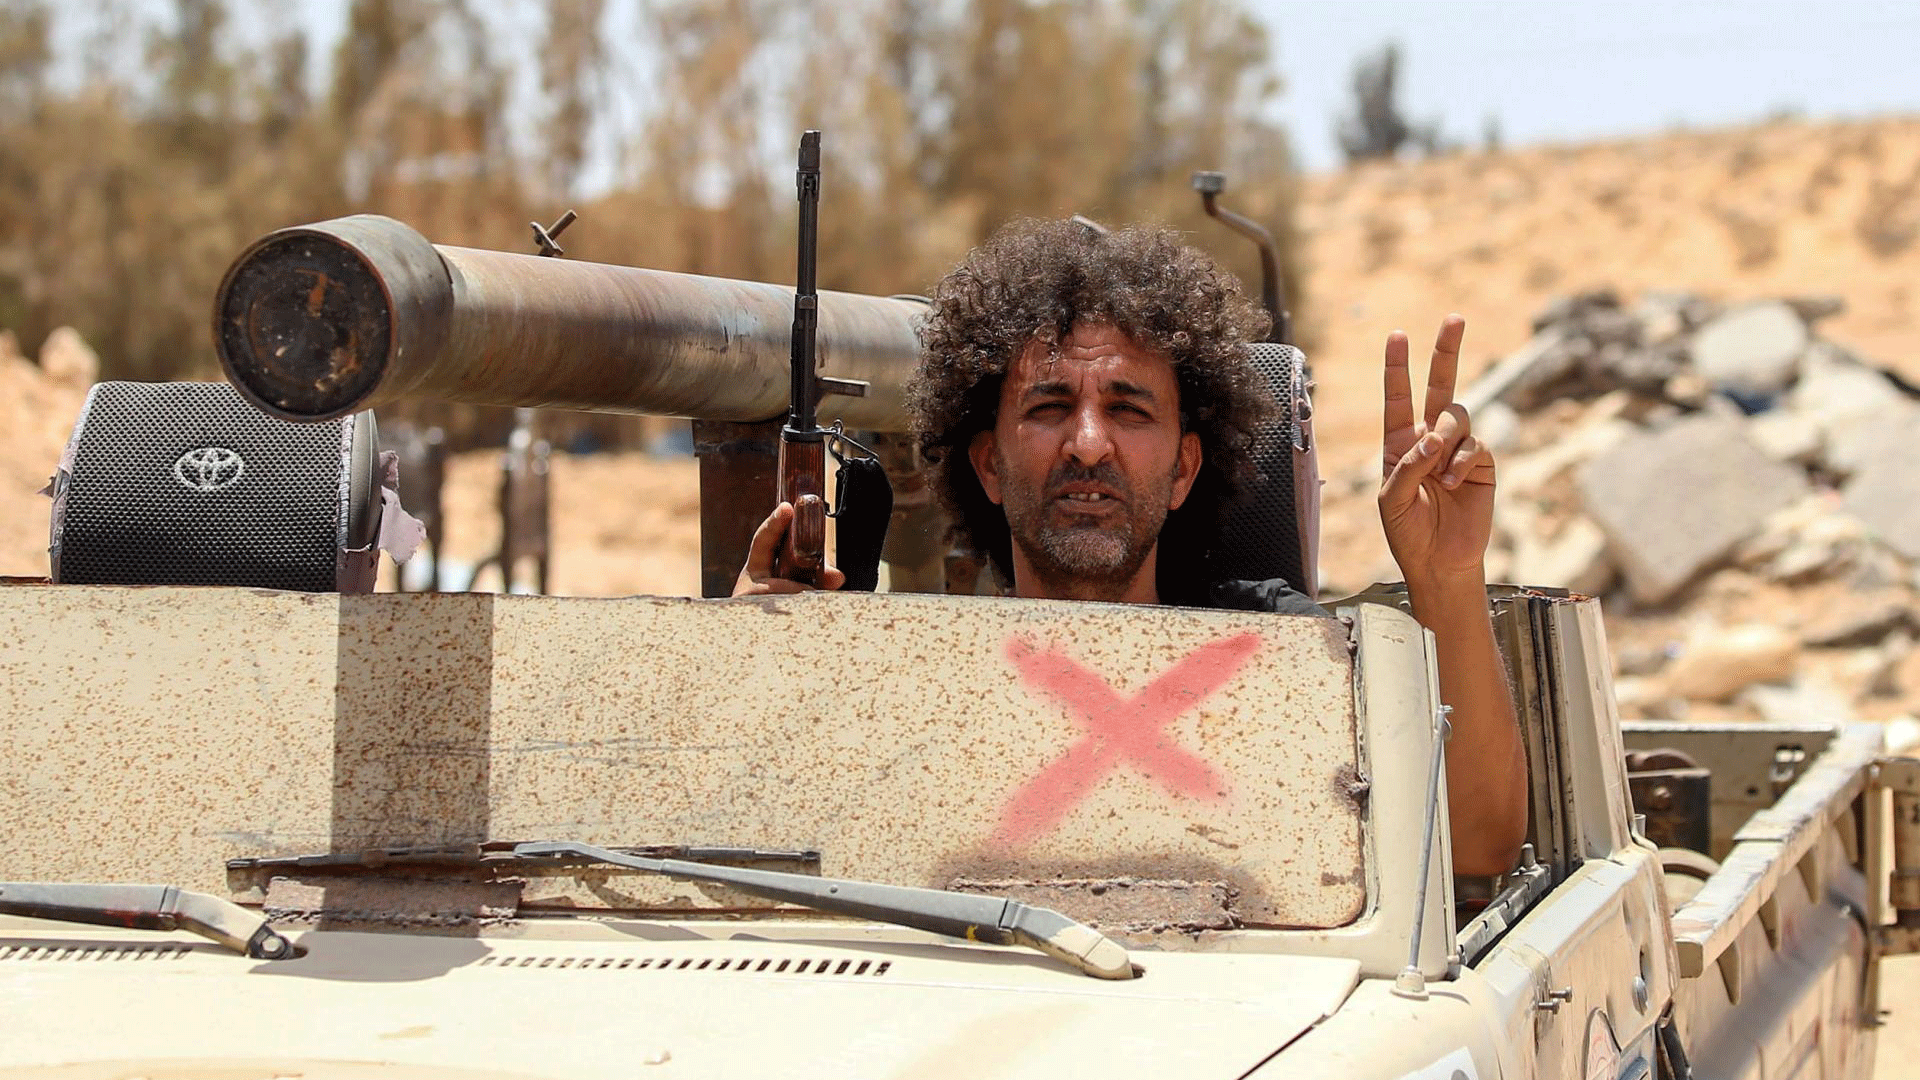 وتشهد ليبيا فوضى وأعمال عنف منذ سقوط نظام معمر القذافي في العام 2011